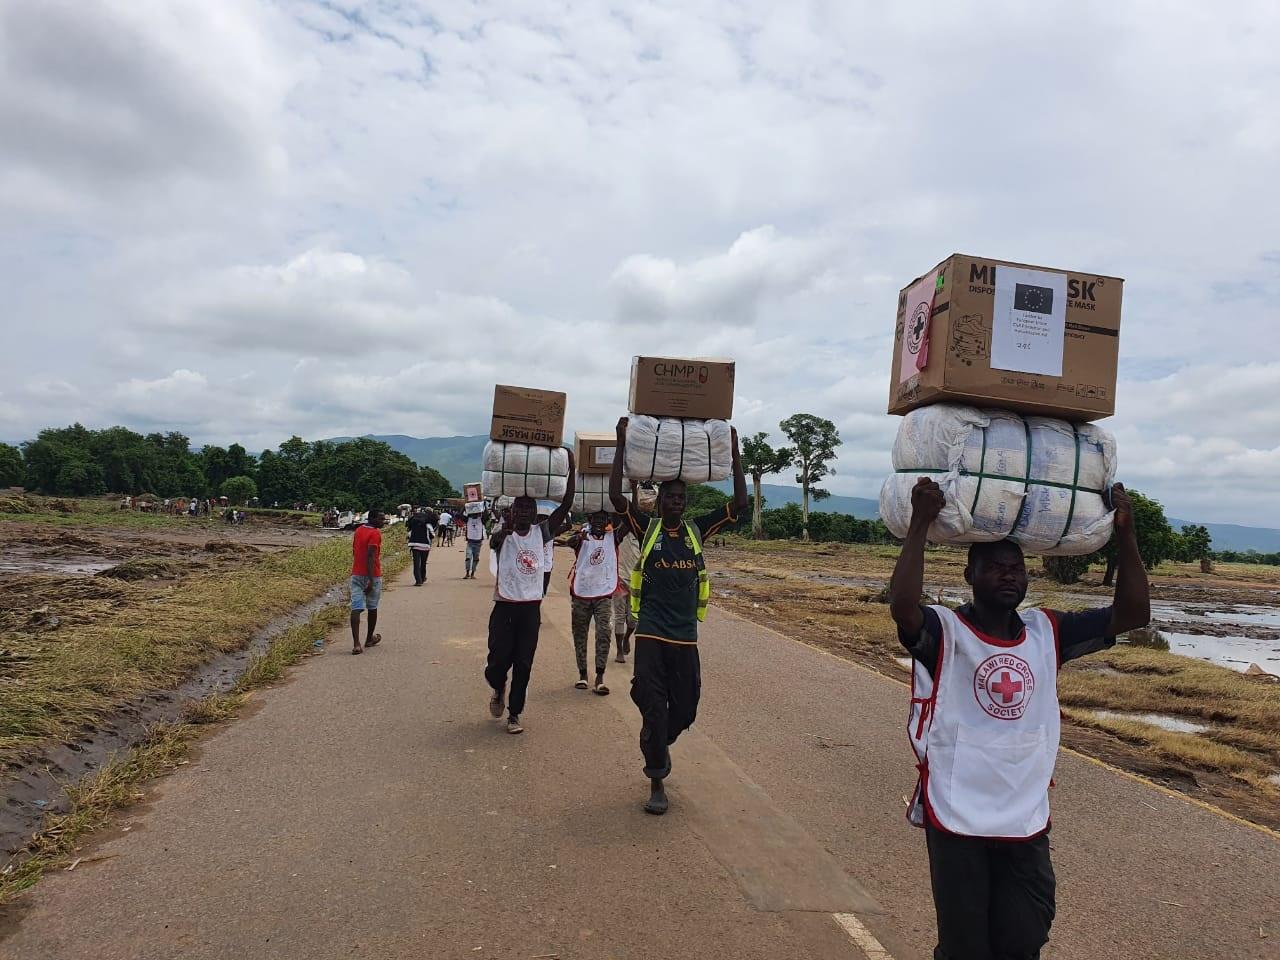 Diversi uomini con magliette della Croce Rossa portano pacchi sulla testa. Camminano lungo una strada che è circondata da campi allagati.